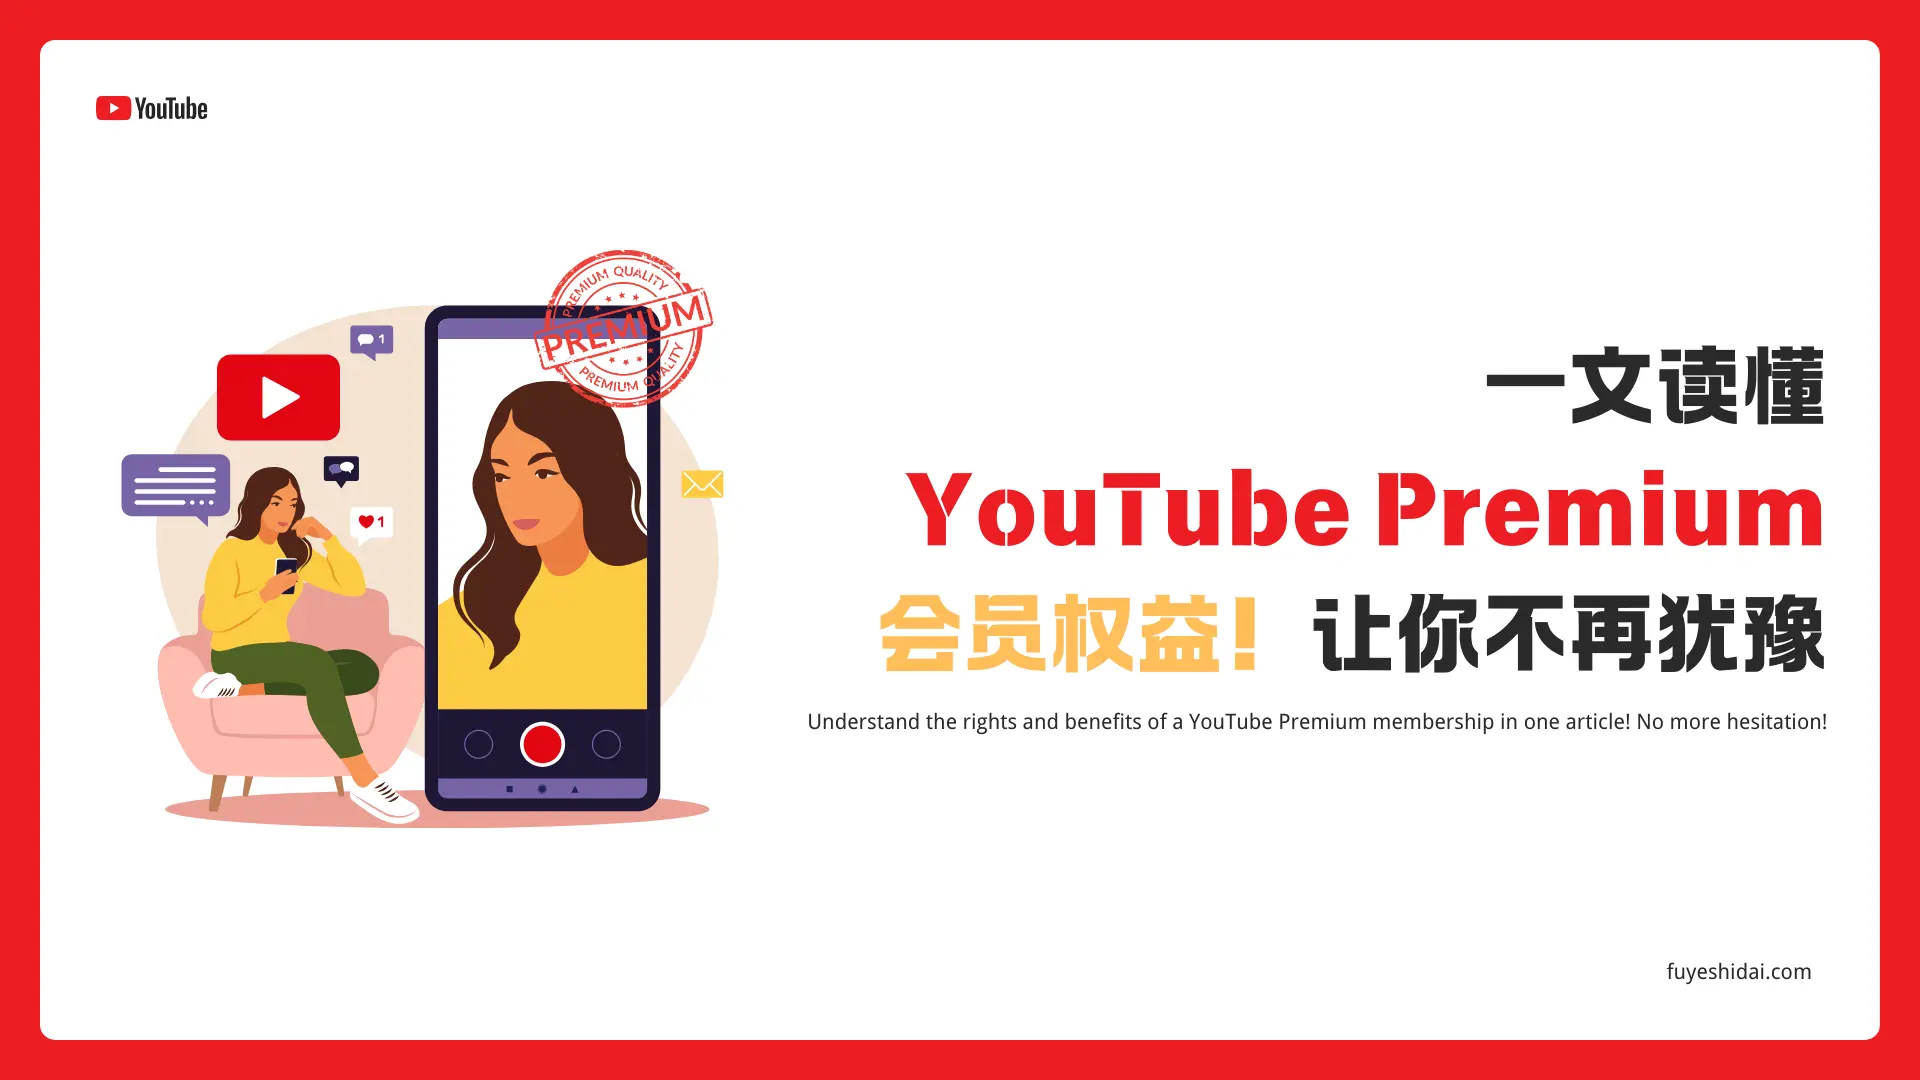 社媒运营推广 - Youtube - 一文读懂YouTube Premium会员权益！让你不再犹豫 - 特色图片